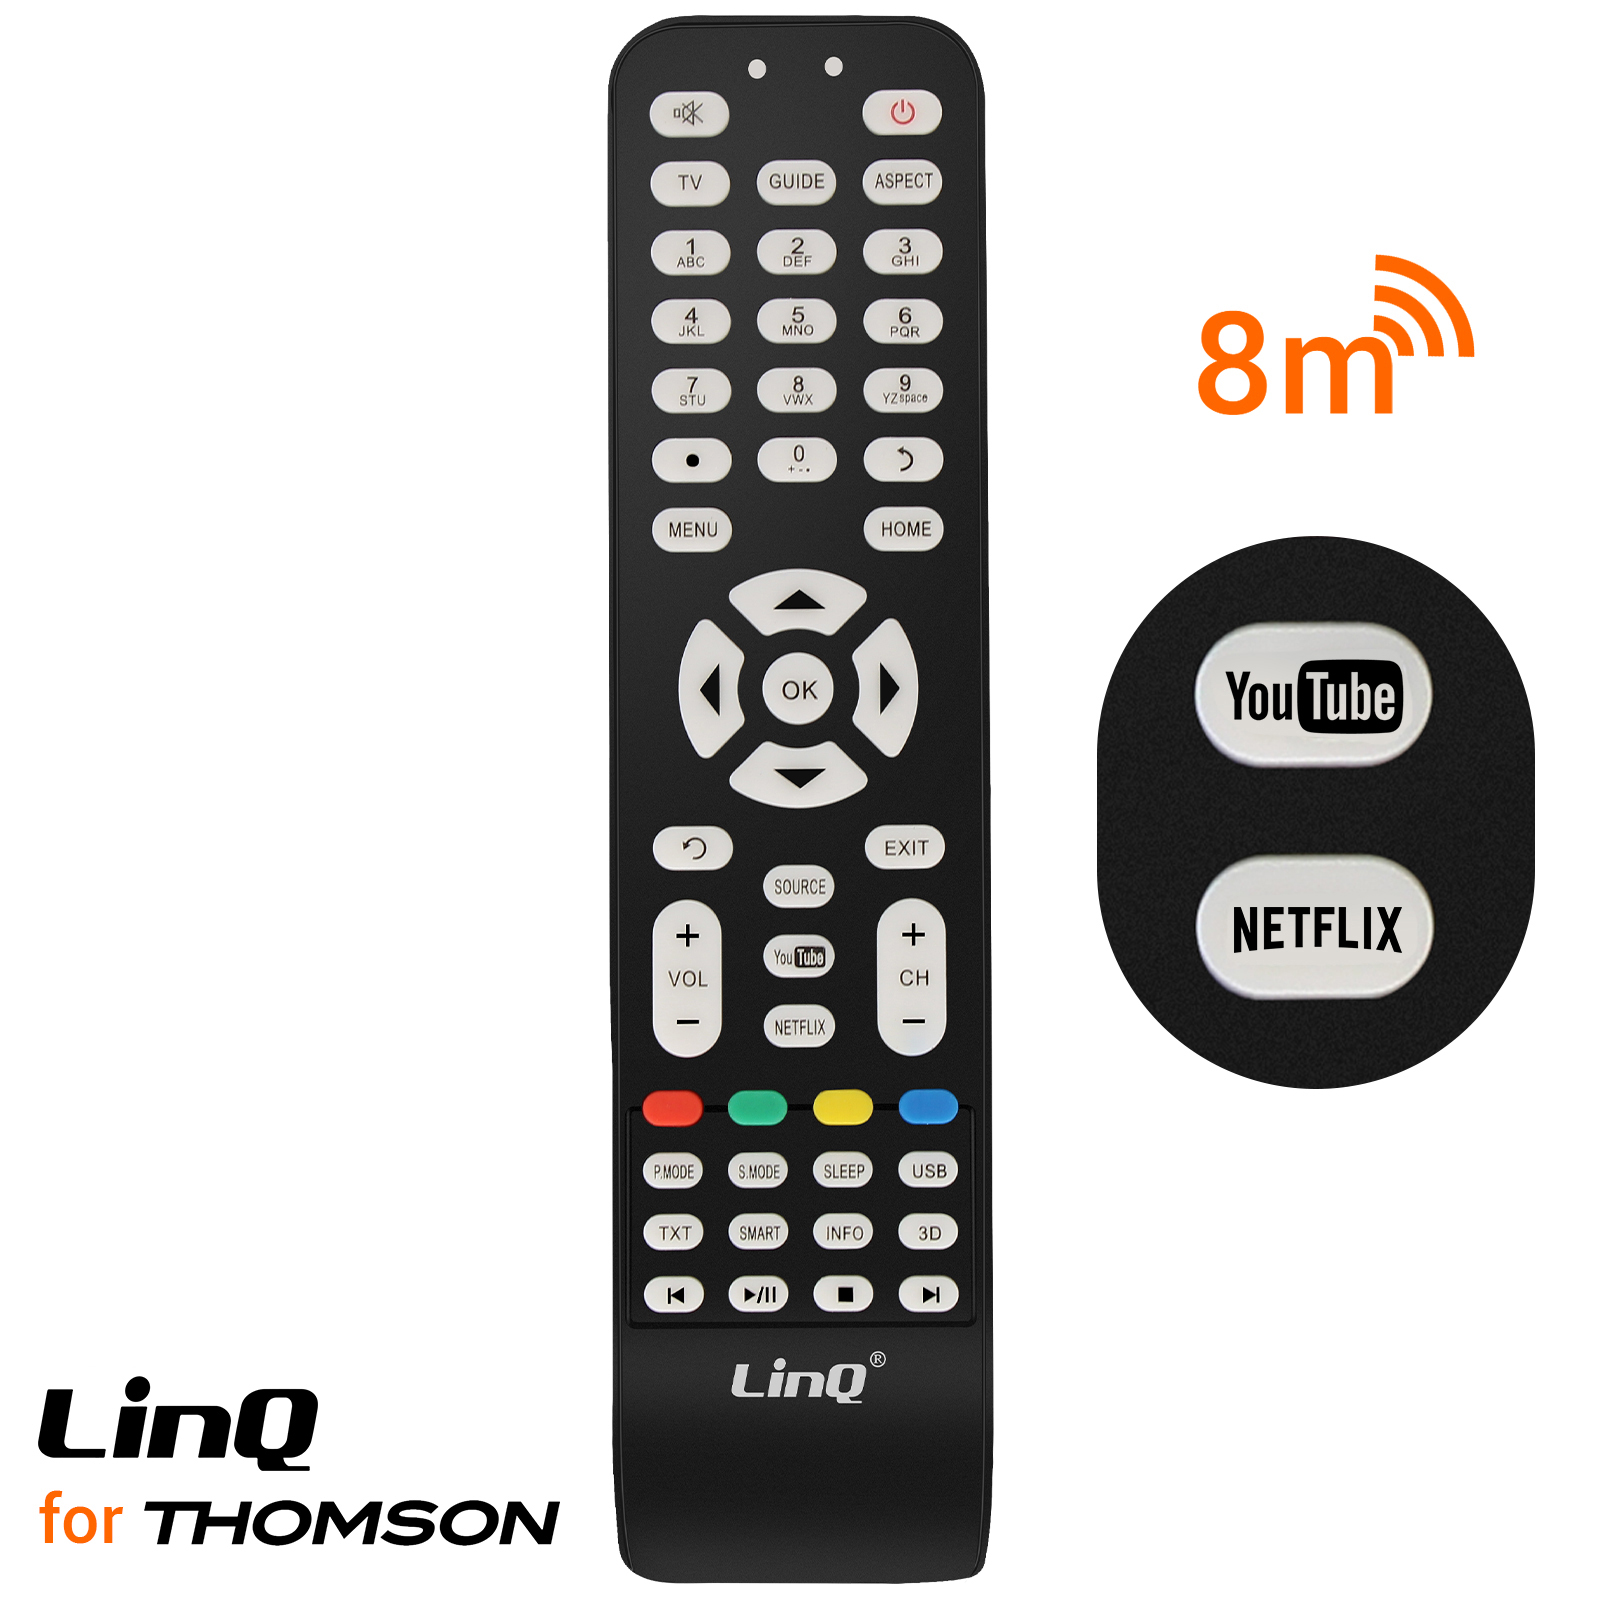 Telecomando universale per televisione Thomson, LinQ - nero - Italiano